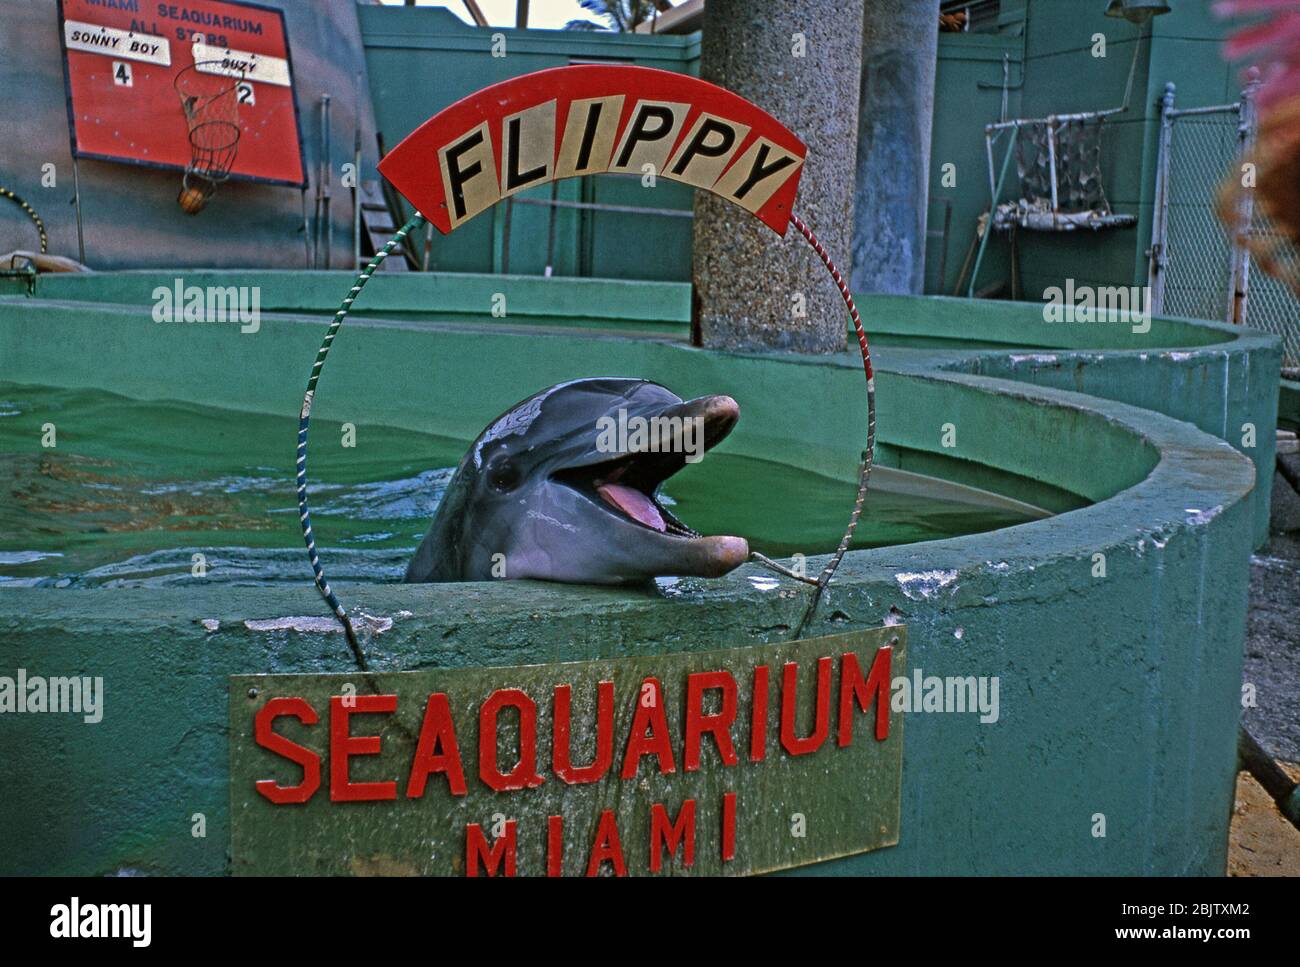 Il delfino a bottiglia 'Flippy' nel suo serbatoio di tenuta al Miami Seaquarium, Florida, Stati Uniti c. 1960. Il Seaquarium è un grande oceanarium, aperto nel 1955. Ai delfini sono stati dati nomi che li si adattavano, il più famoso è Flipper. Il primo delfino chiamato Flippy visse presso i Marine Studios della Florida. Nel 1949 Flippy intrattenne la folla – l'atto includeva Flippy trainando una donna e un cane intorno alla piscina su una tavola da surf! Gli spettacoli marini divennero grandi in tutta la Florida. Tuttavia, le indagini condotte nel corso degli anni hanno dimostrato che la conservazione e l'addestramento di mammiferi marini in cattività possono comportare crudeltà animale e trattamenti disumani. Foto Stock